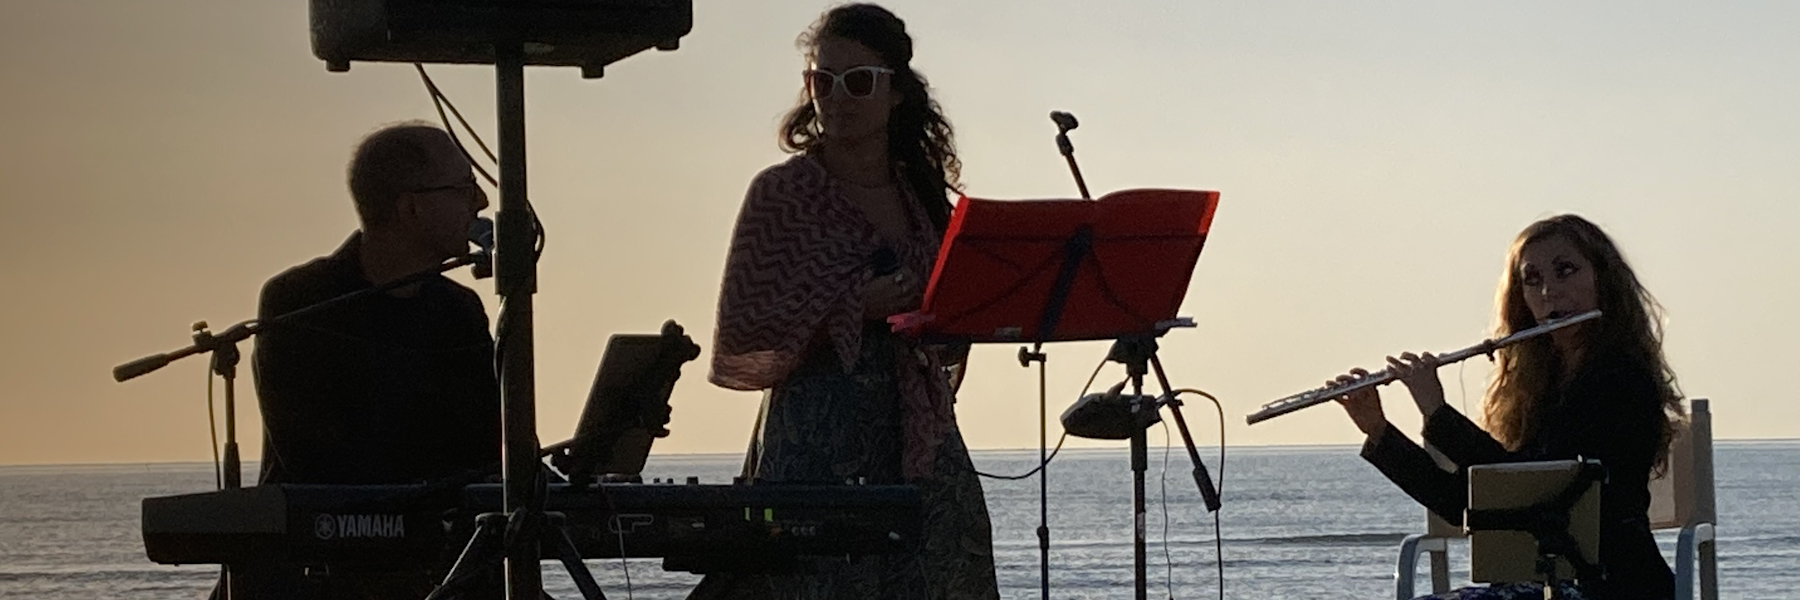 Concerts à l'aube sur la plage de Tagliata 